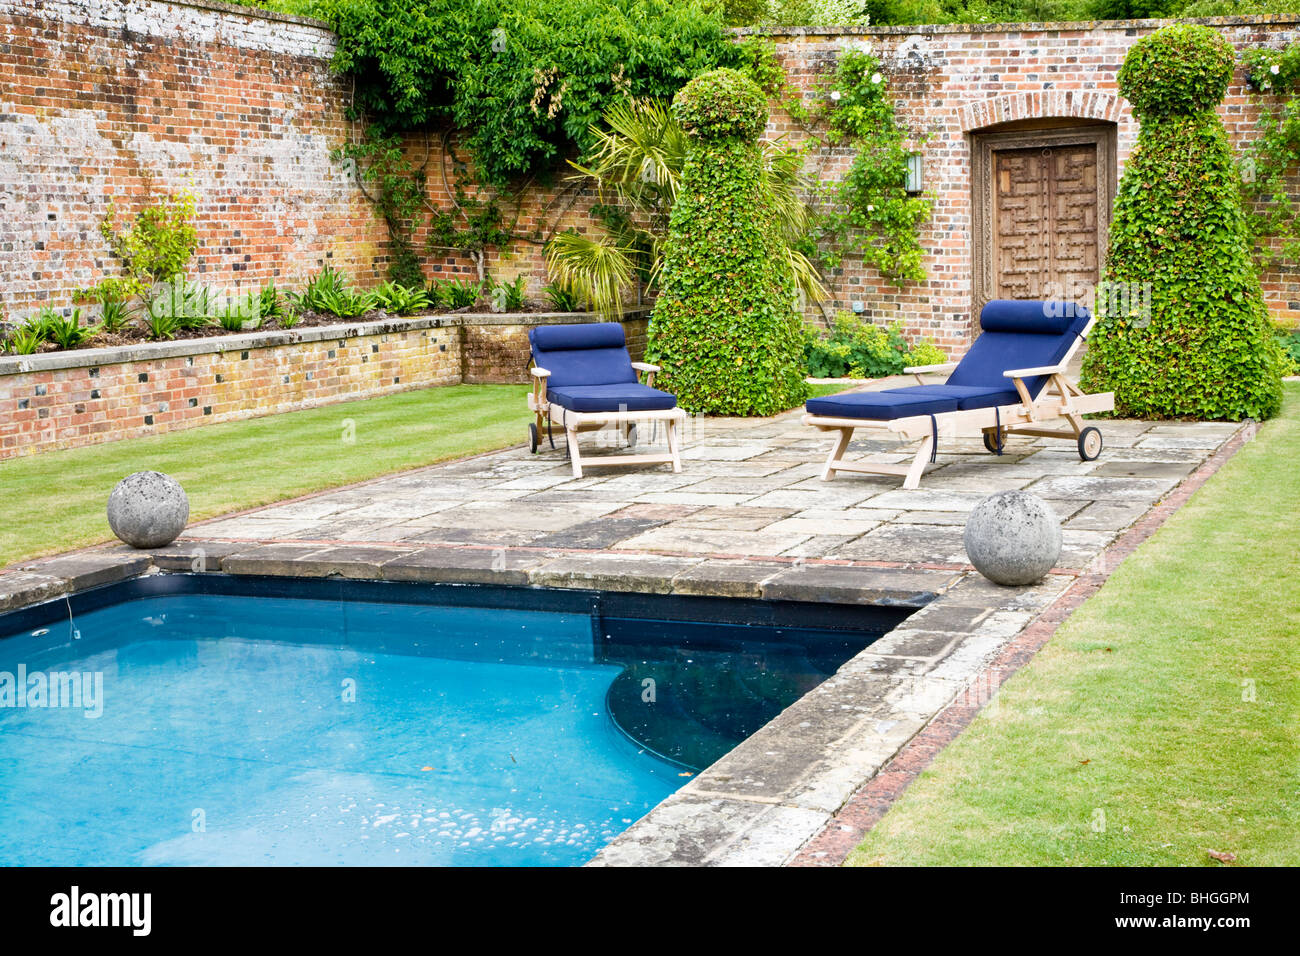 Piscina in un giardino murato nella motivazione di una casa di campagna inglese. Foto Stock